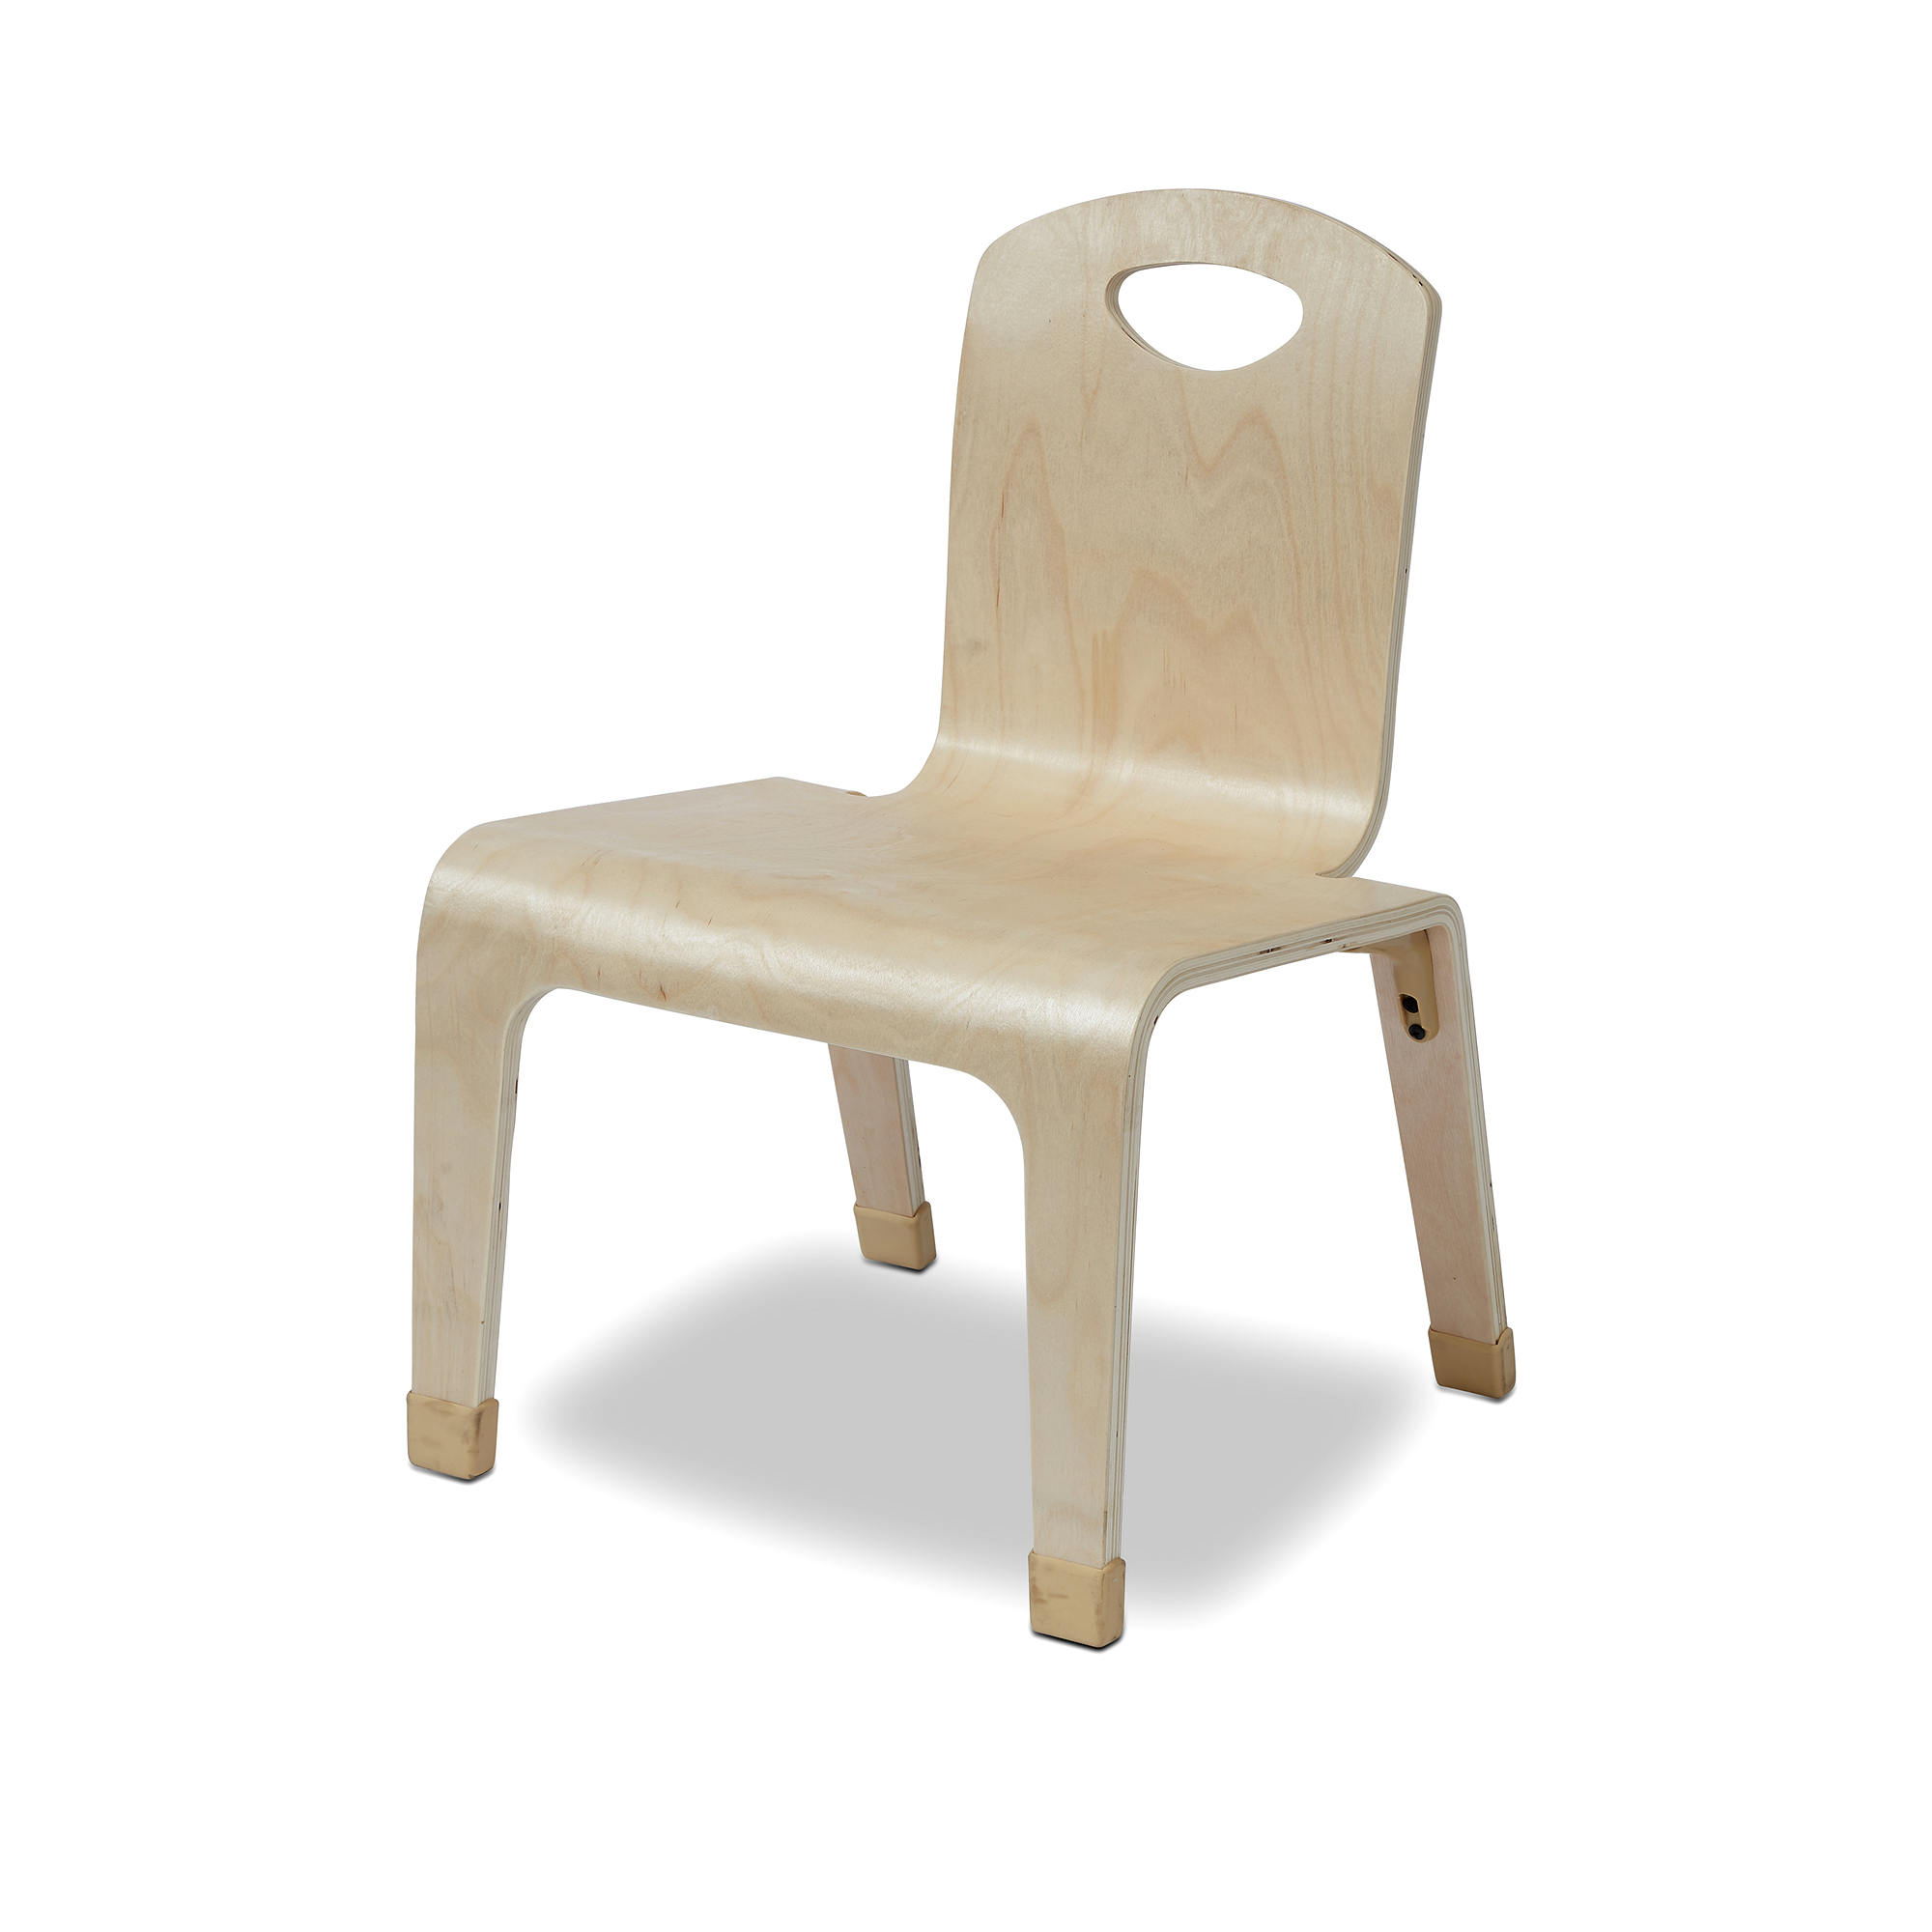 One Piece Wooden Chair - Teacher - 310mm